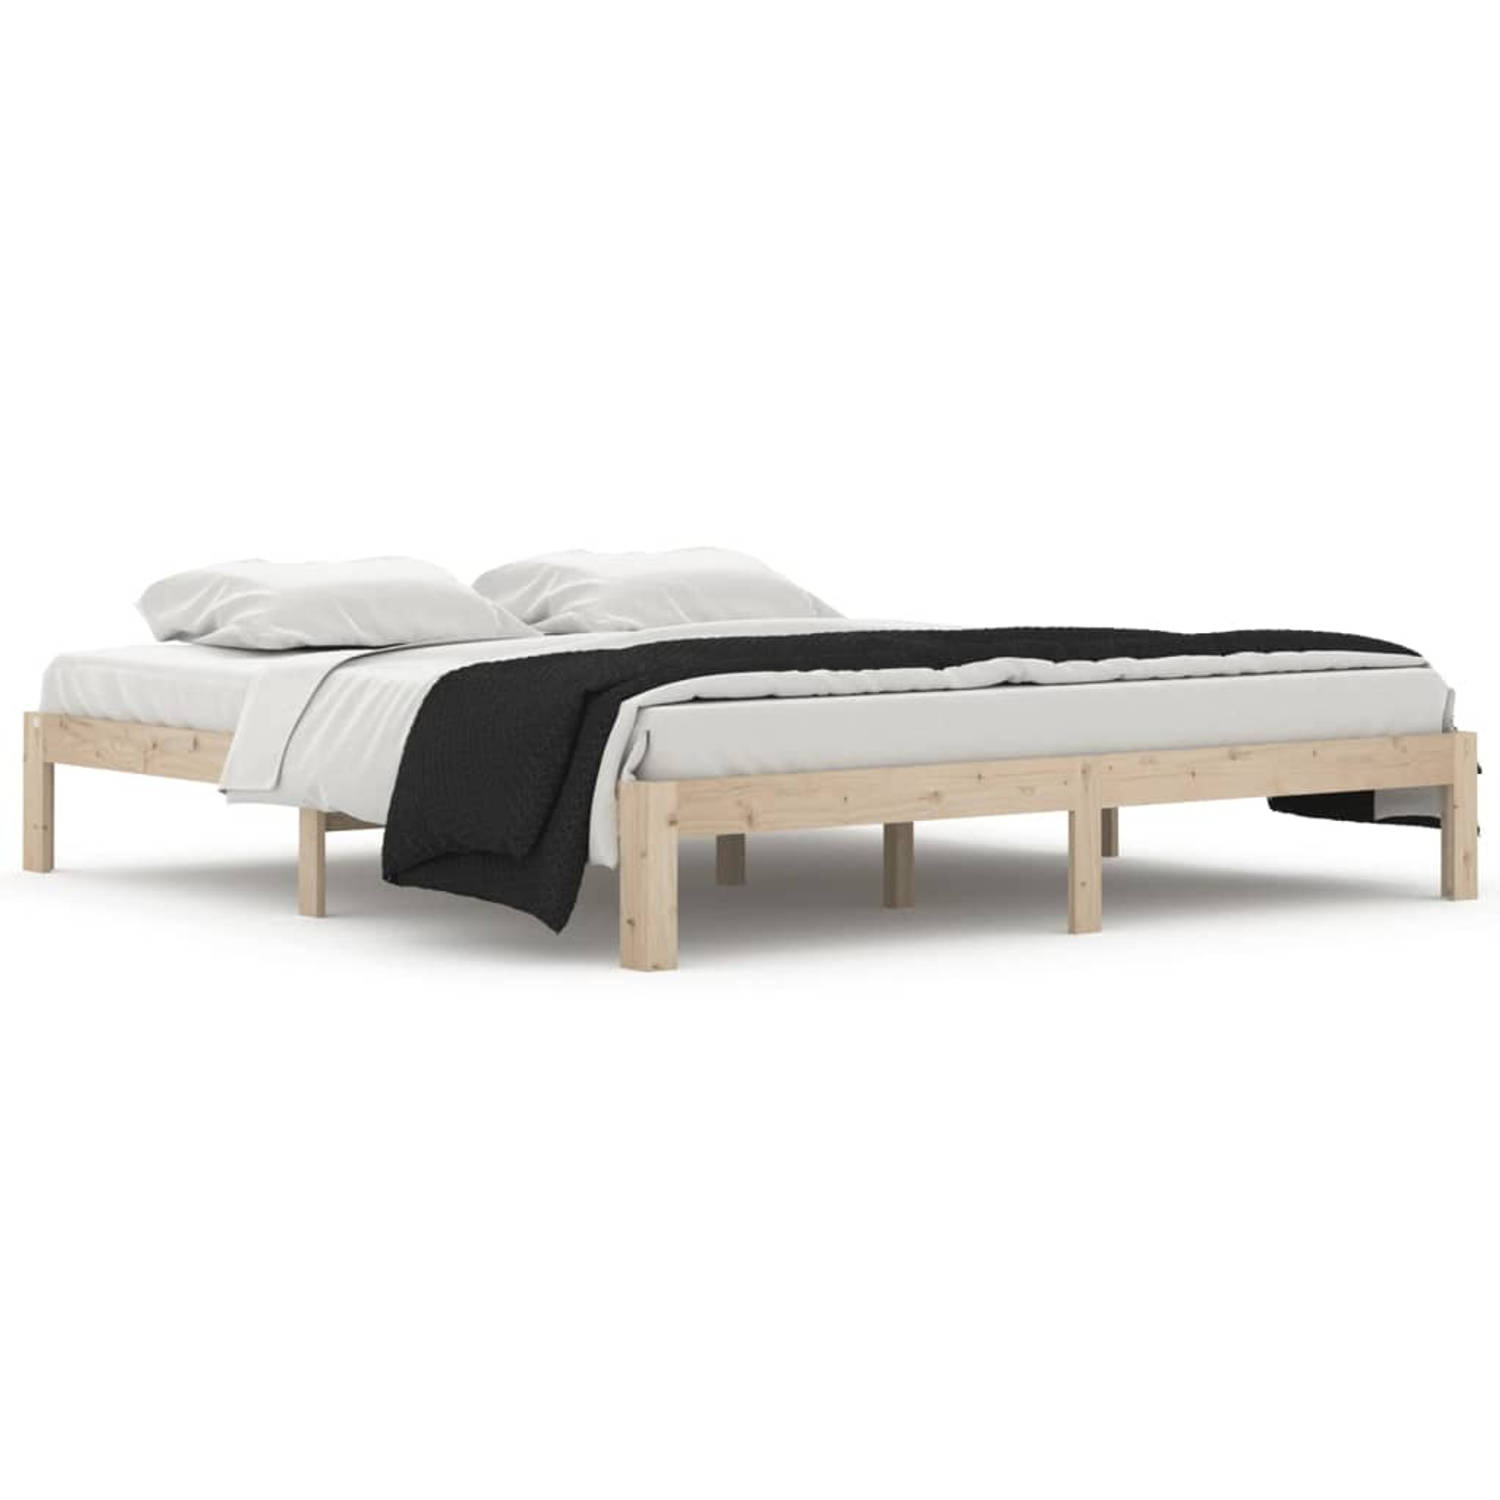 The Living Store Bedframe massief hout 180x200 cm 6FT Super King - Bedframe - Bedframes - Bed - Bedbodem - Ledikant - Bed Frame - Massief Houten Bedframe - Slaapmeubel - Bedden - B